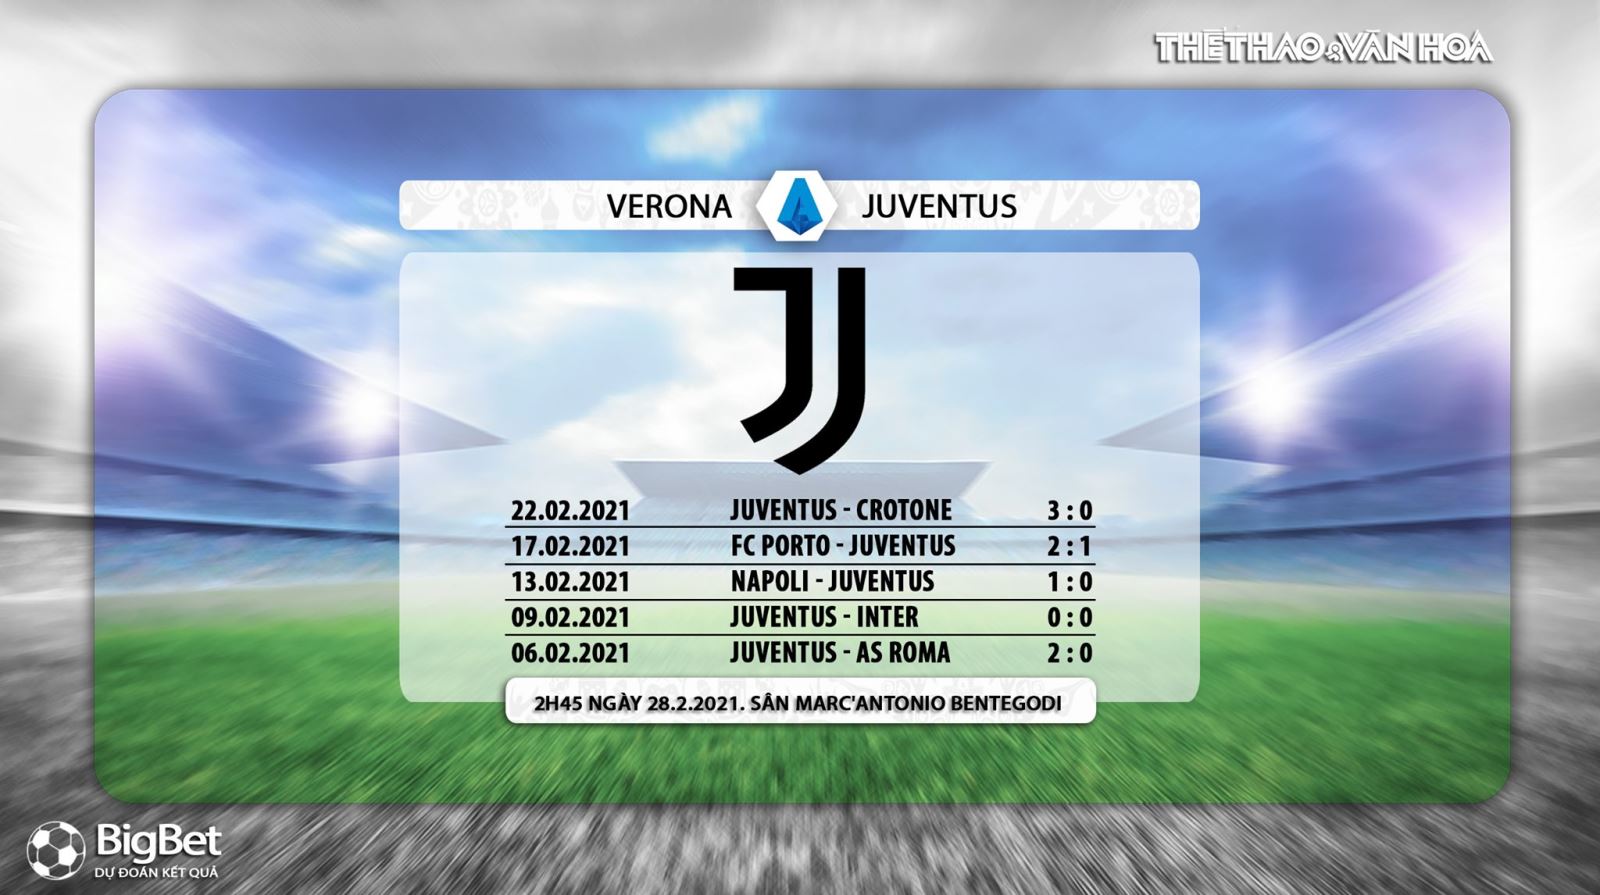 Keo nha cai, Nhận định kết quả, Verona vs Juventus, Trực tiếp bóng đá Italia hôm nay, FPT Play, nhận định bóng đá bóng đá Verona vs Juventus, trực tiếp bóng đá Serie A, kèo Juventus, FPT